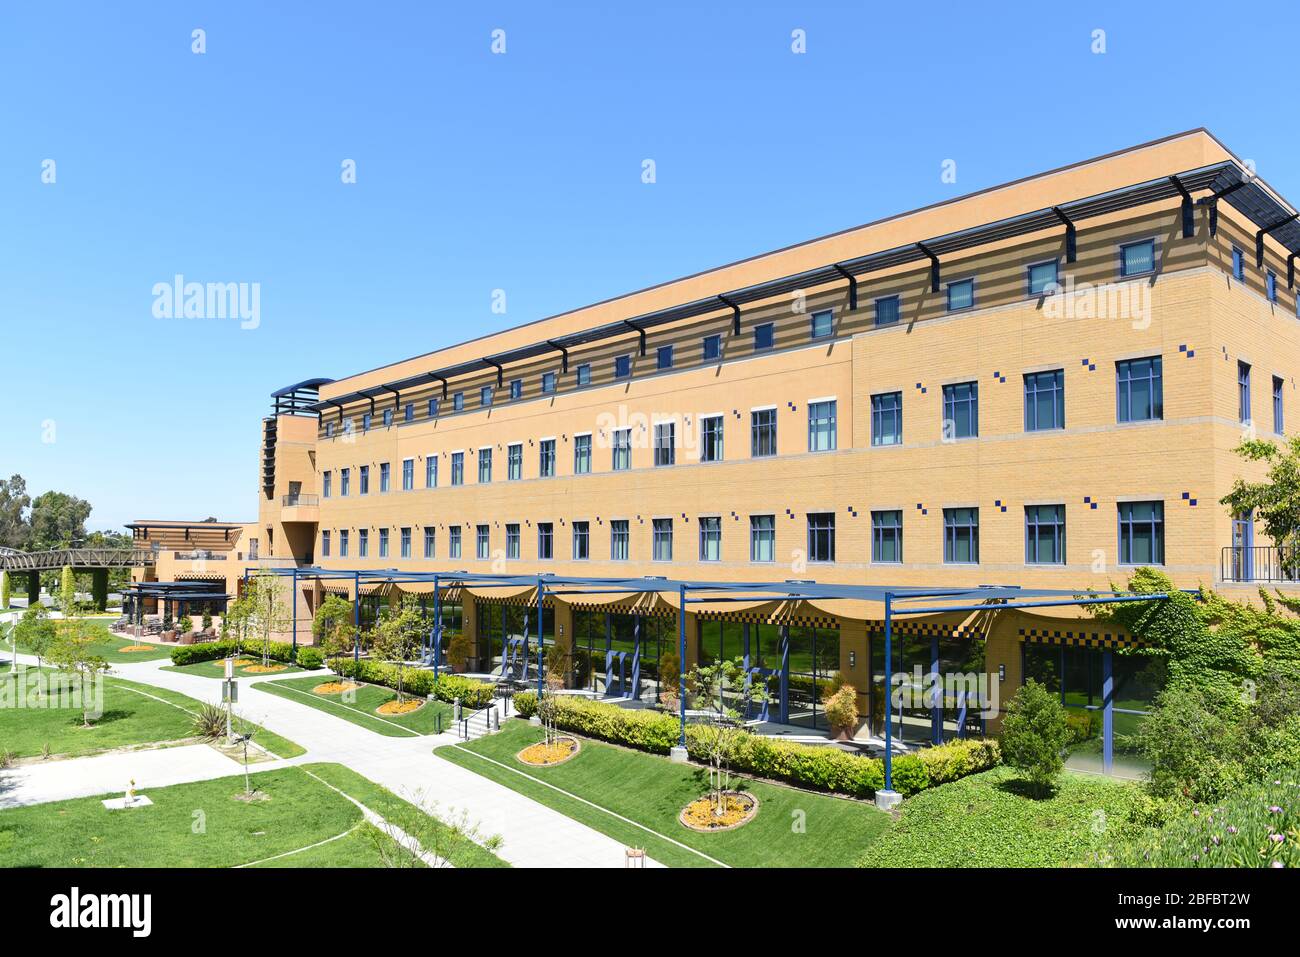 IRVINE, CALIFORNIE - 16 AVRIL 2020: Le Centre international sur le campus de l'Université de Californie Irvine, UCI. Banque D'Images